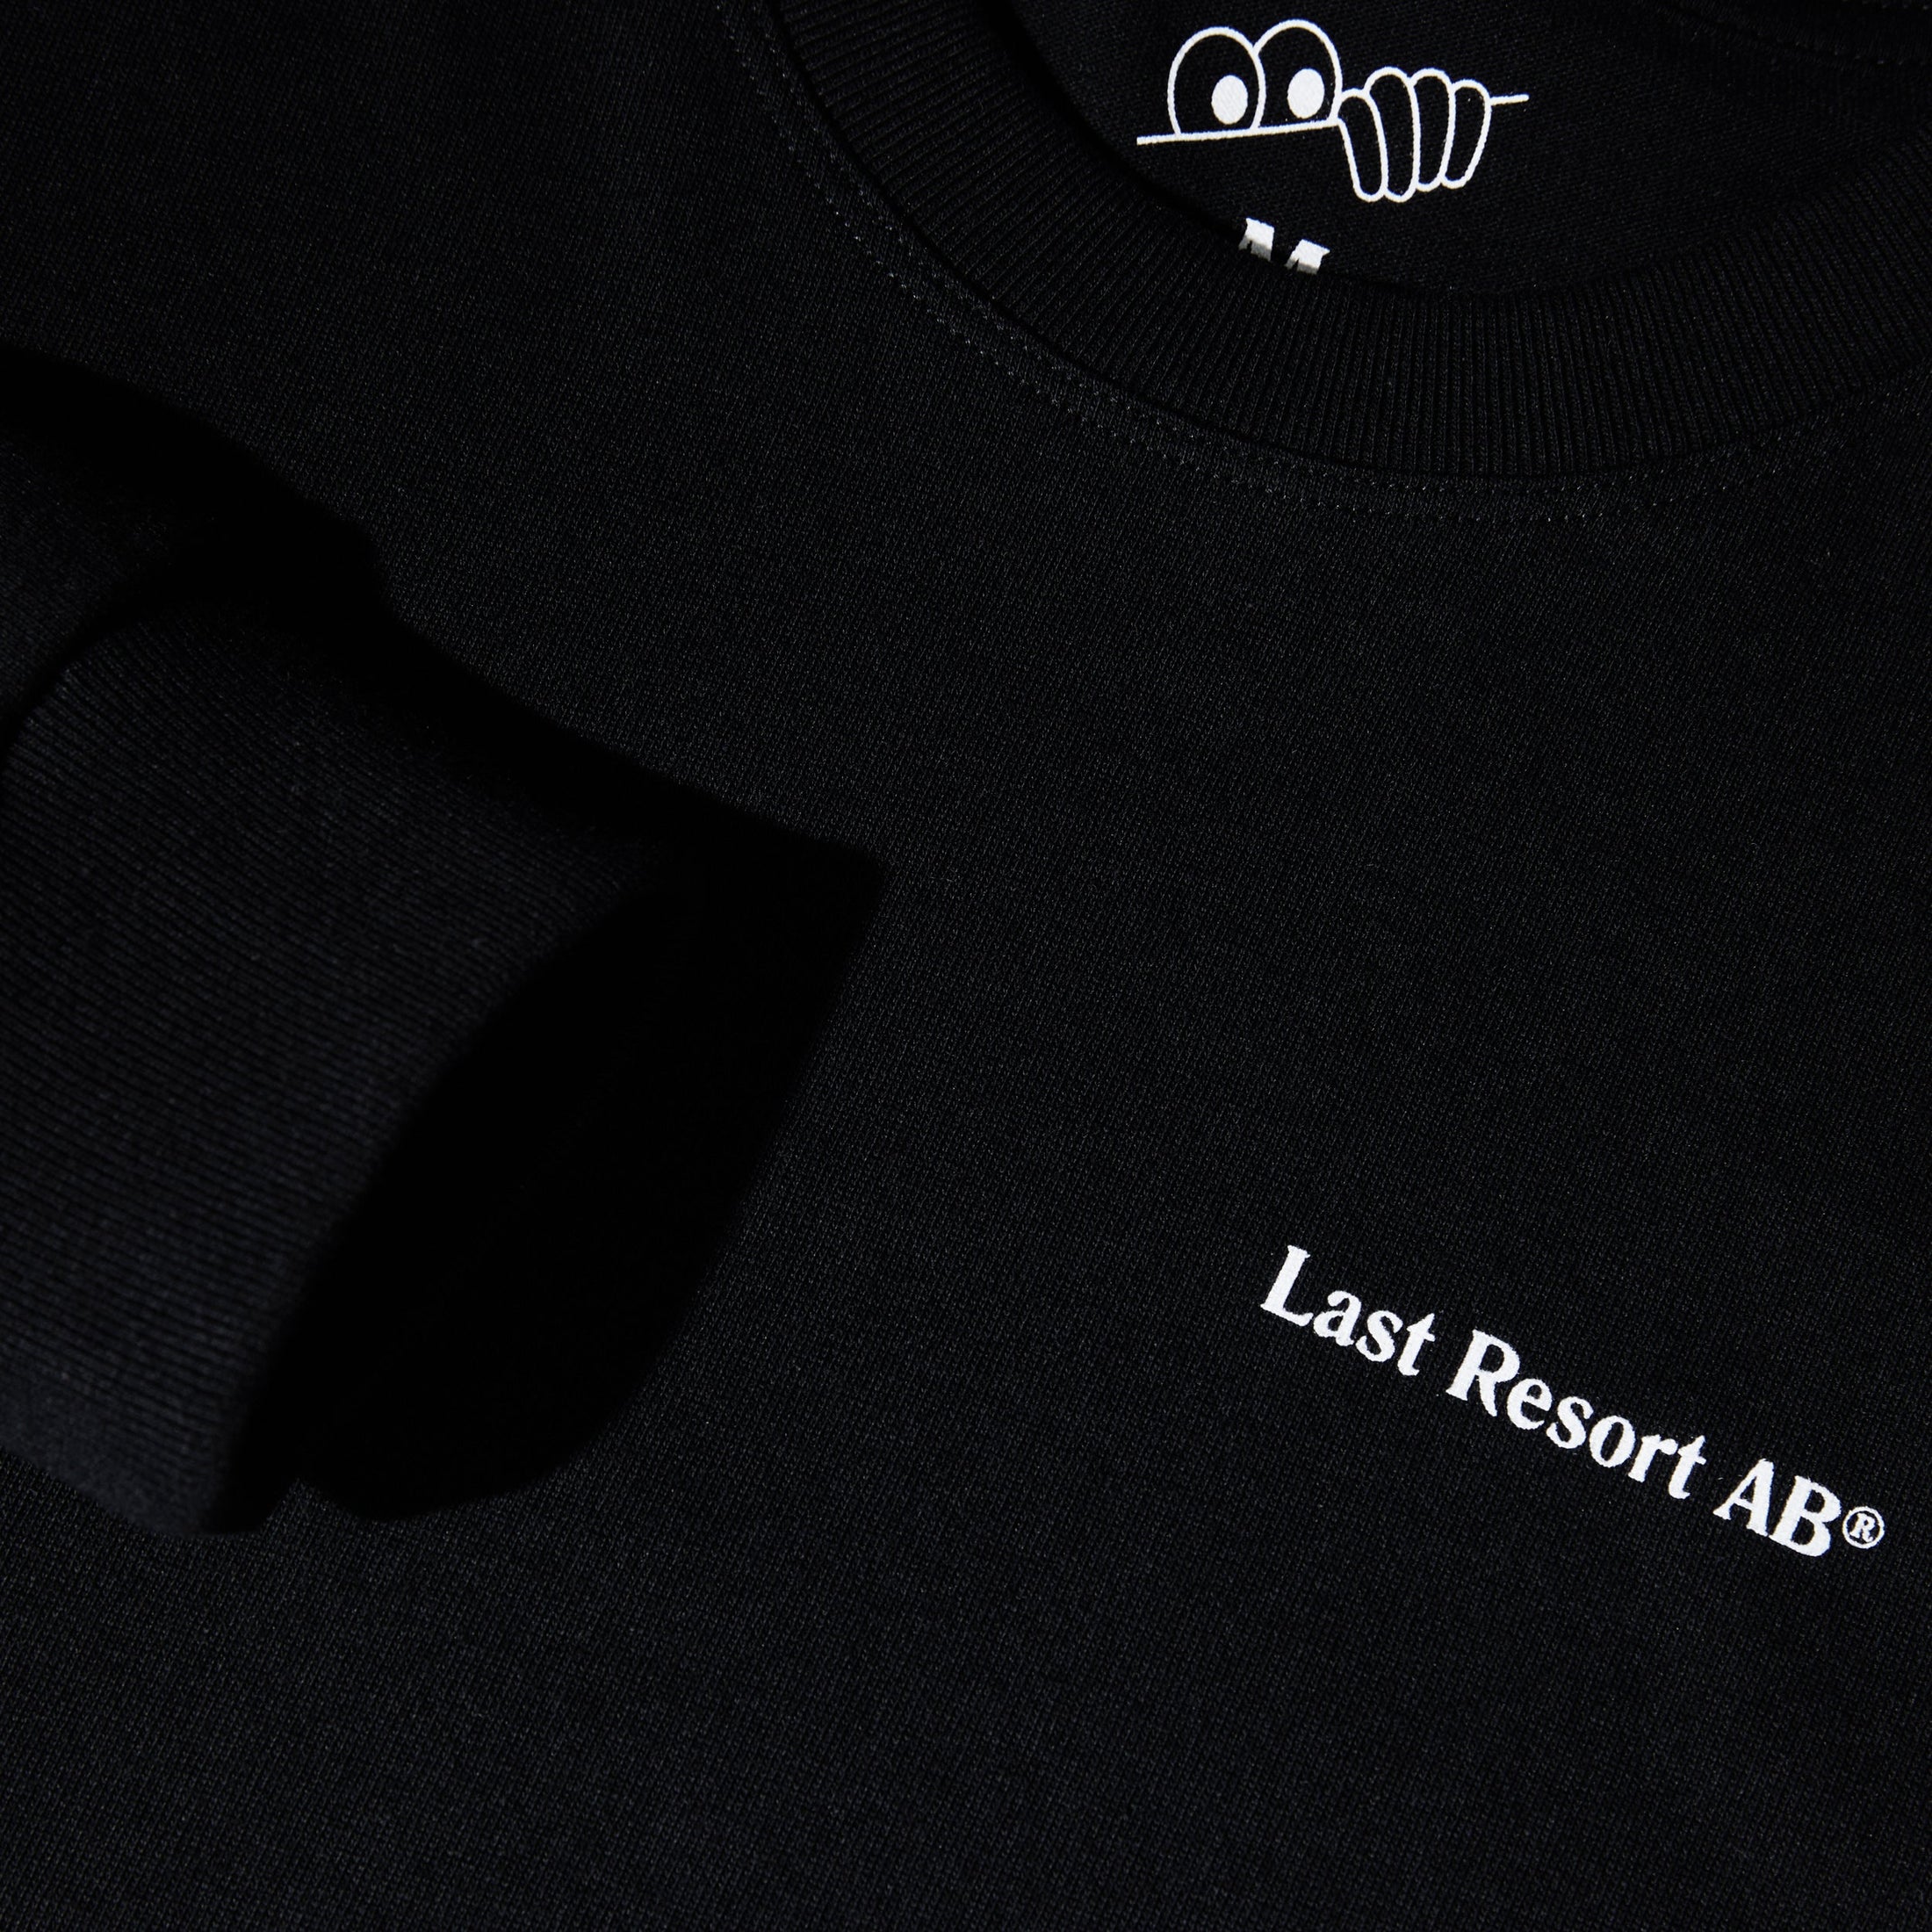 Last Resort AB Atlas Monogram Longsleeve T-Shirt Black / White